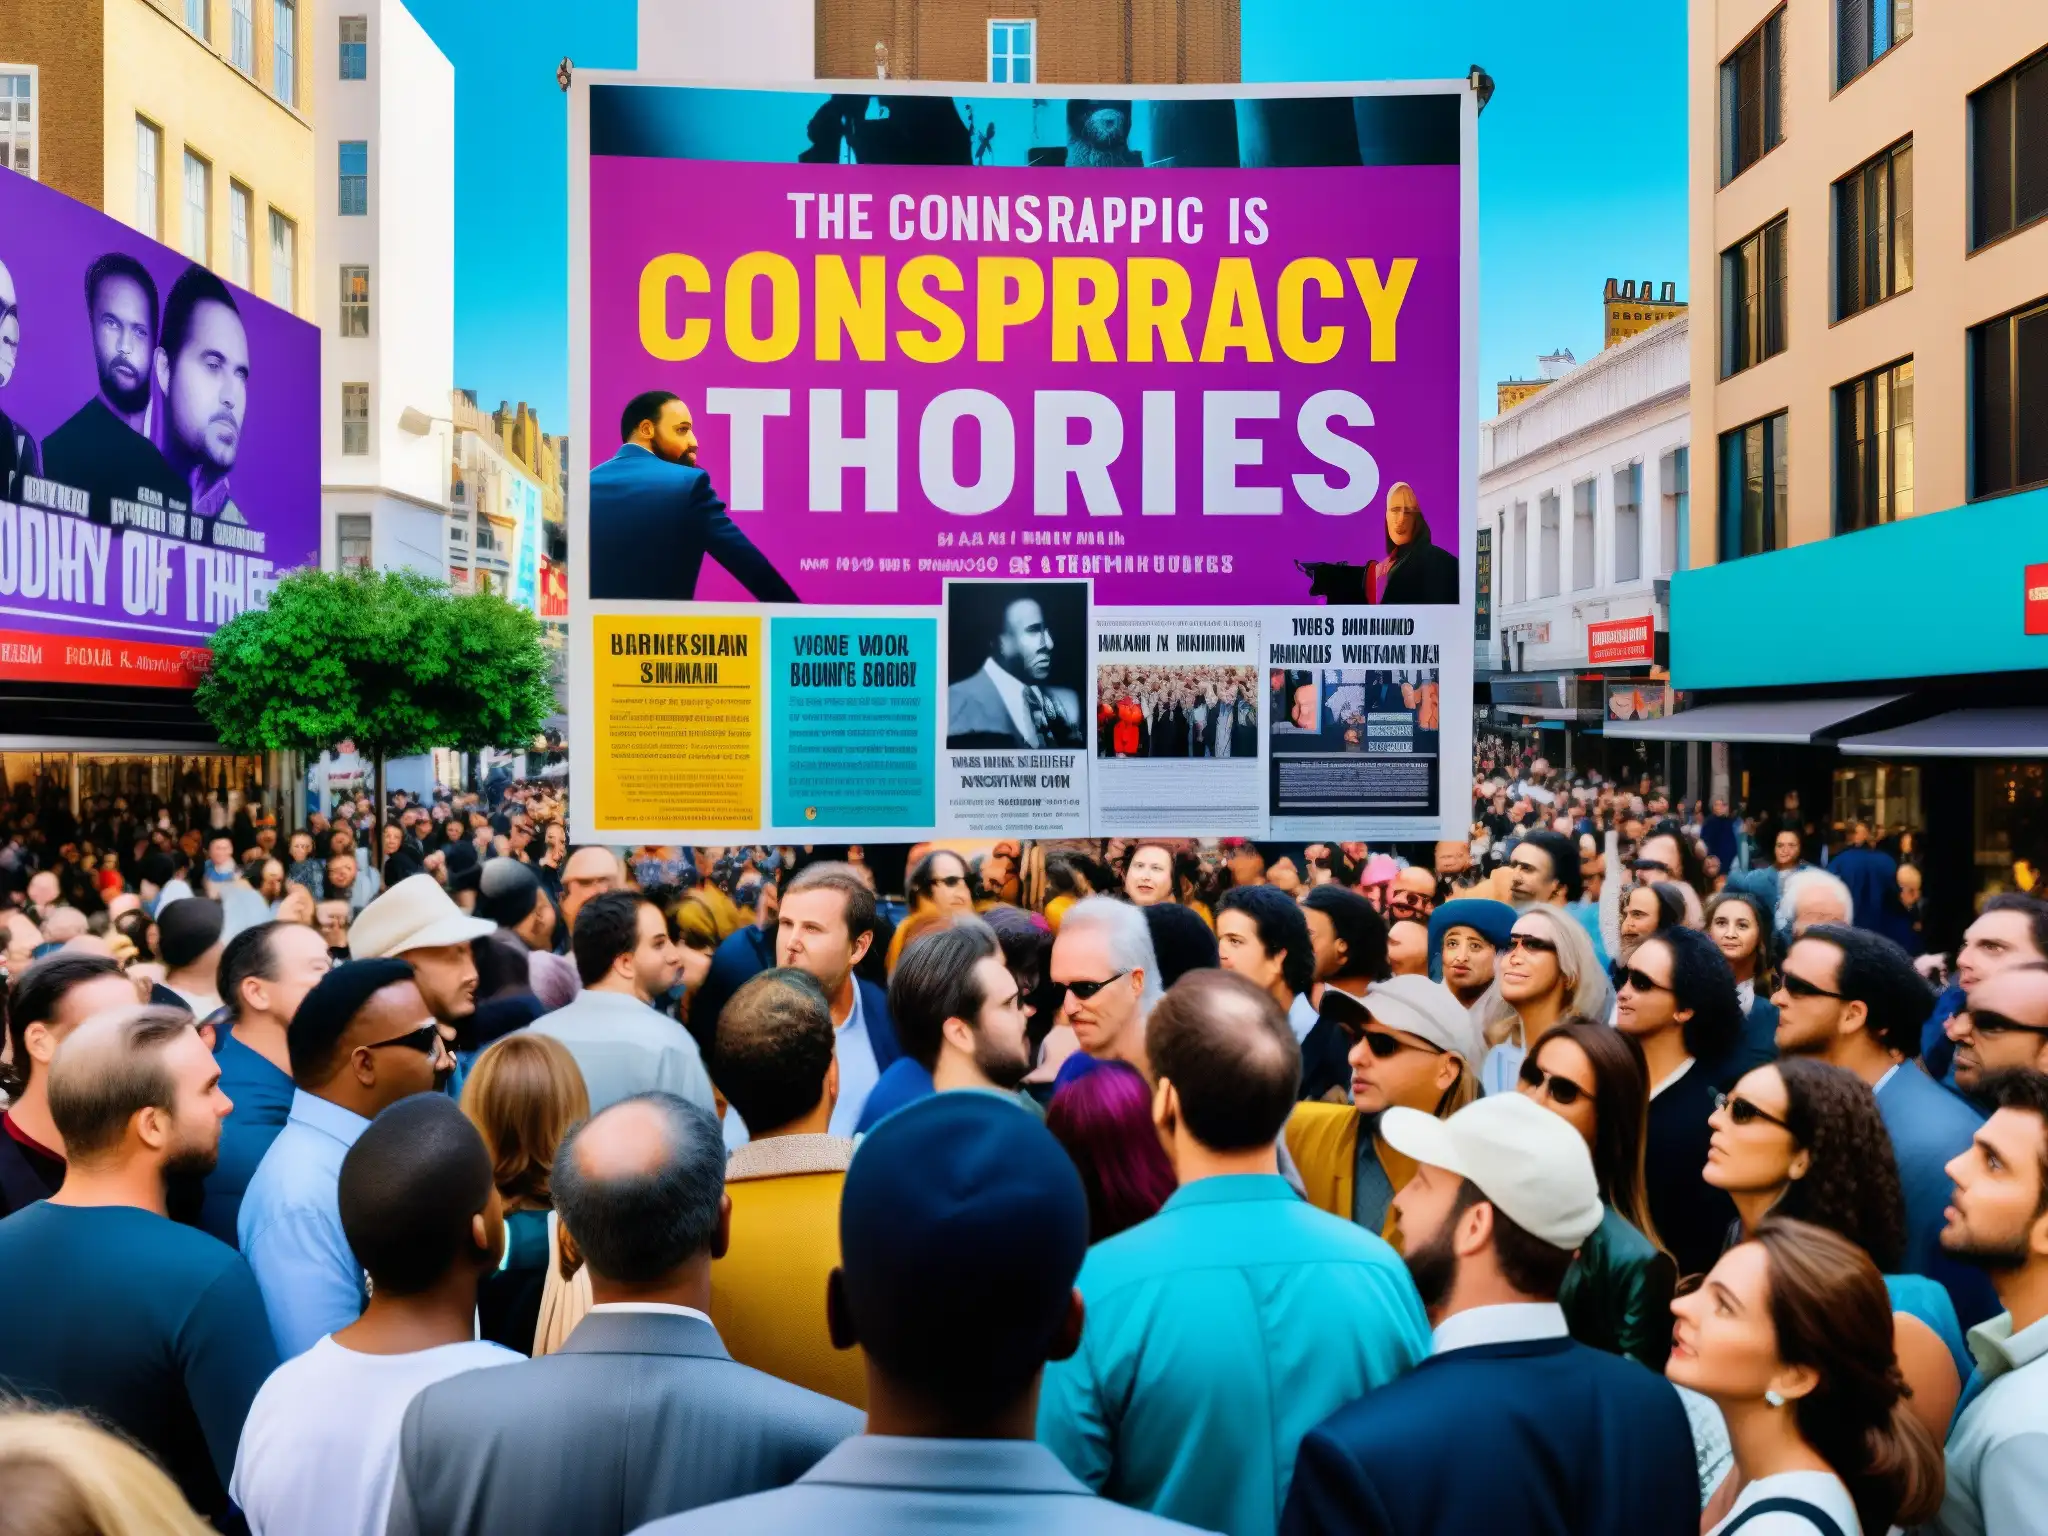 Vibrante calle de la ciudad con gente discutiendo sobre un póster de teorías de conspiración sobre la muerte de celebridades